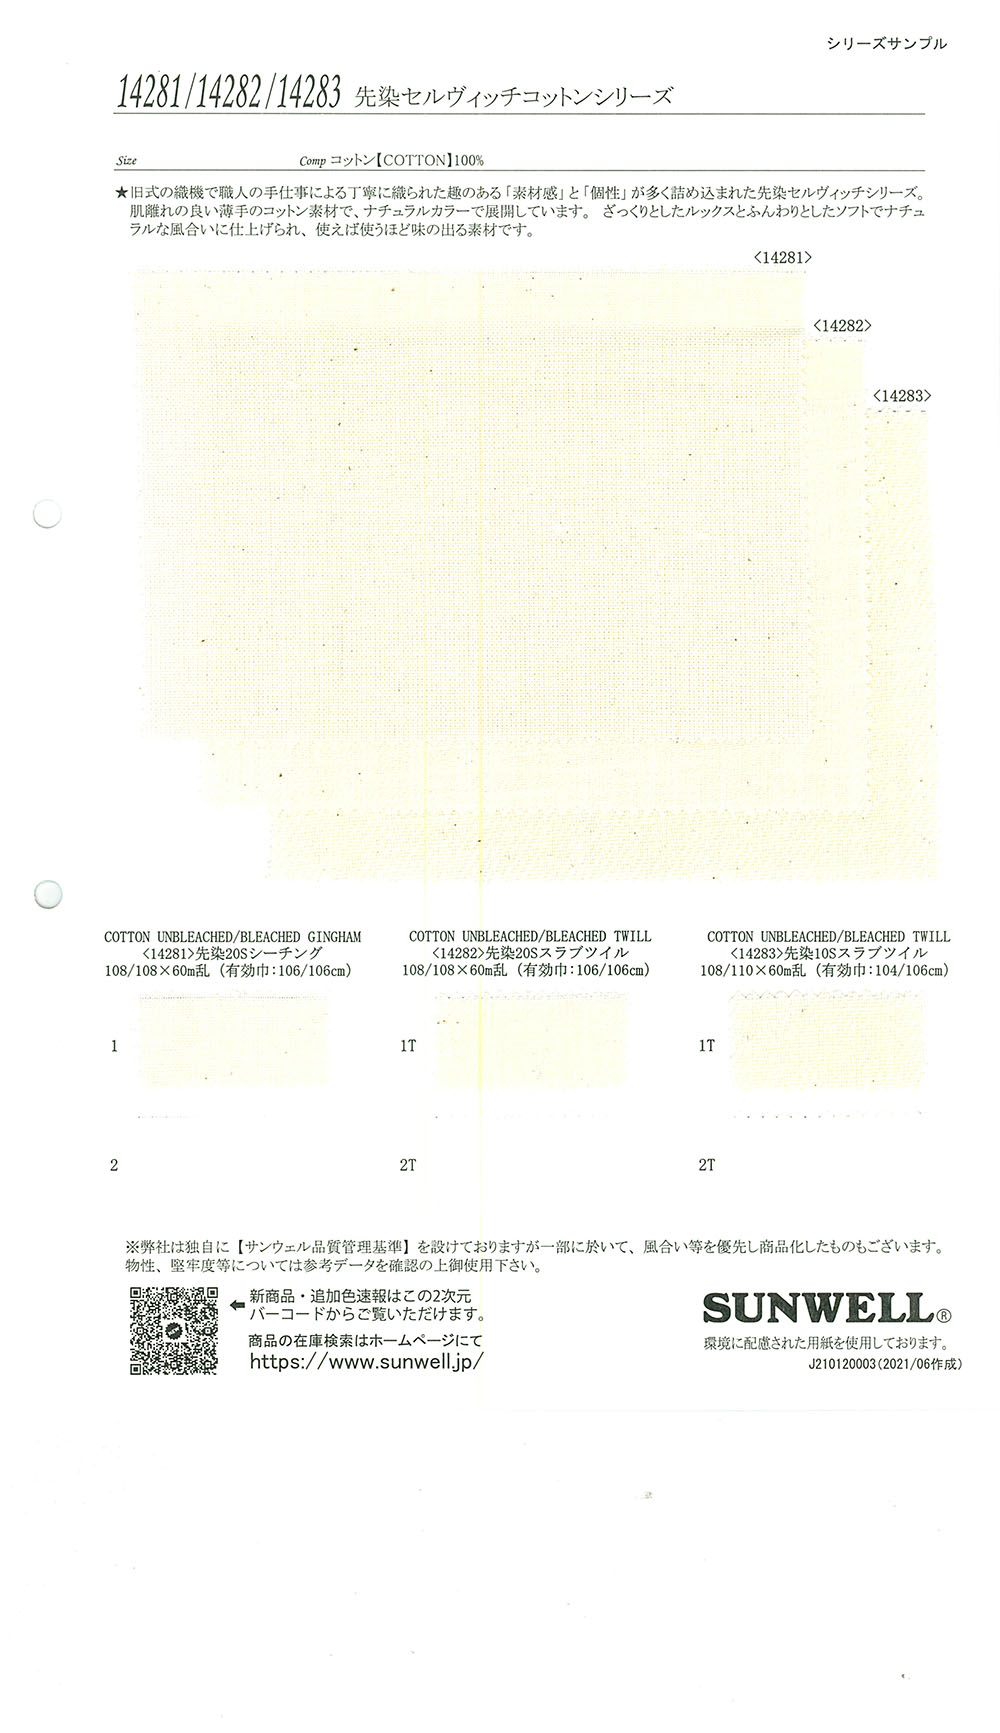 14283 セルヴィッチコットンシリーズ 先染10sスラブツイル[生地] SUNWELL(サンウェル)